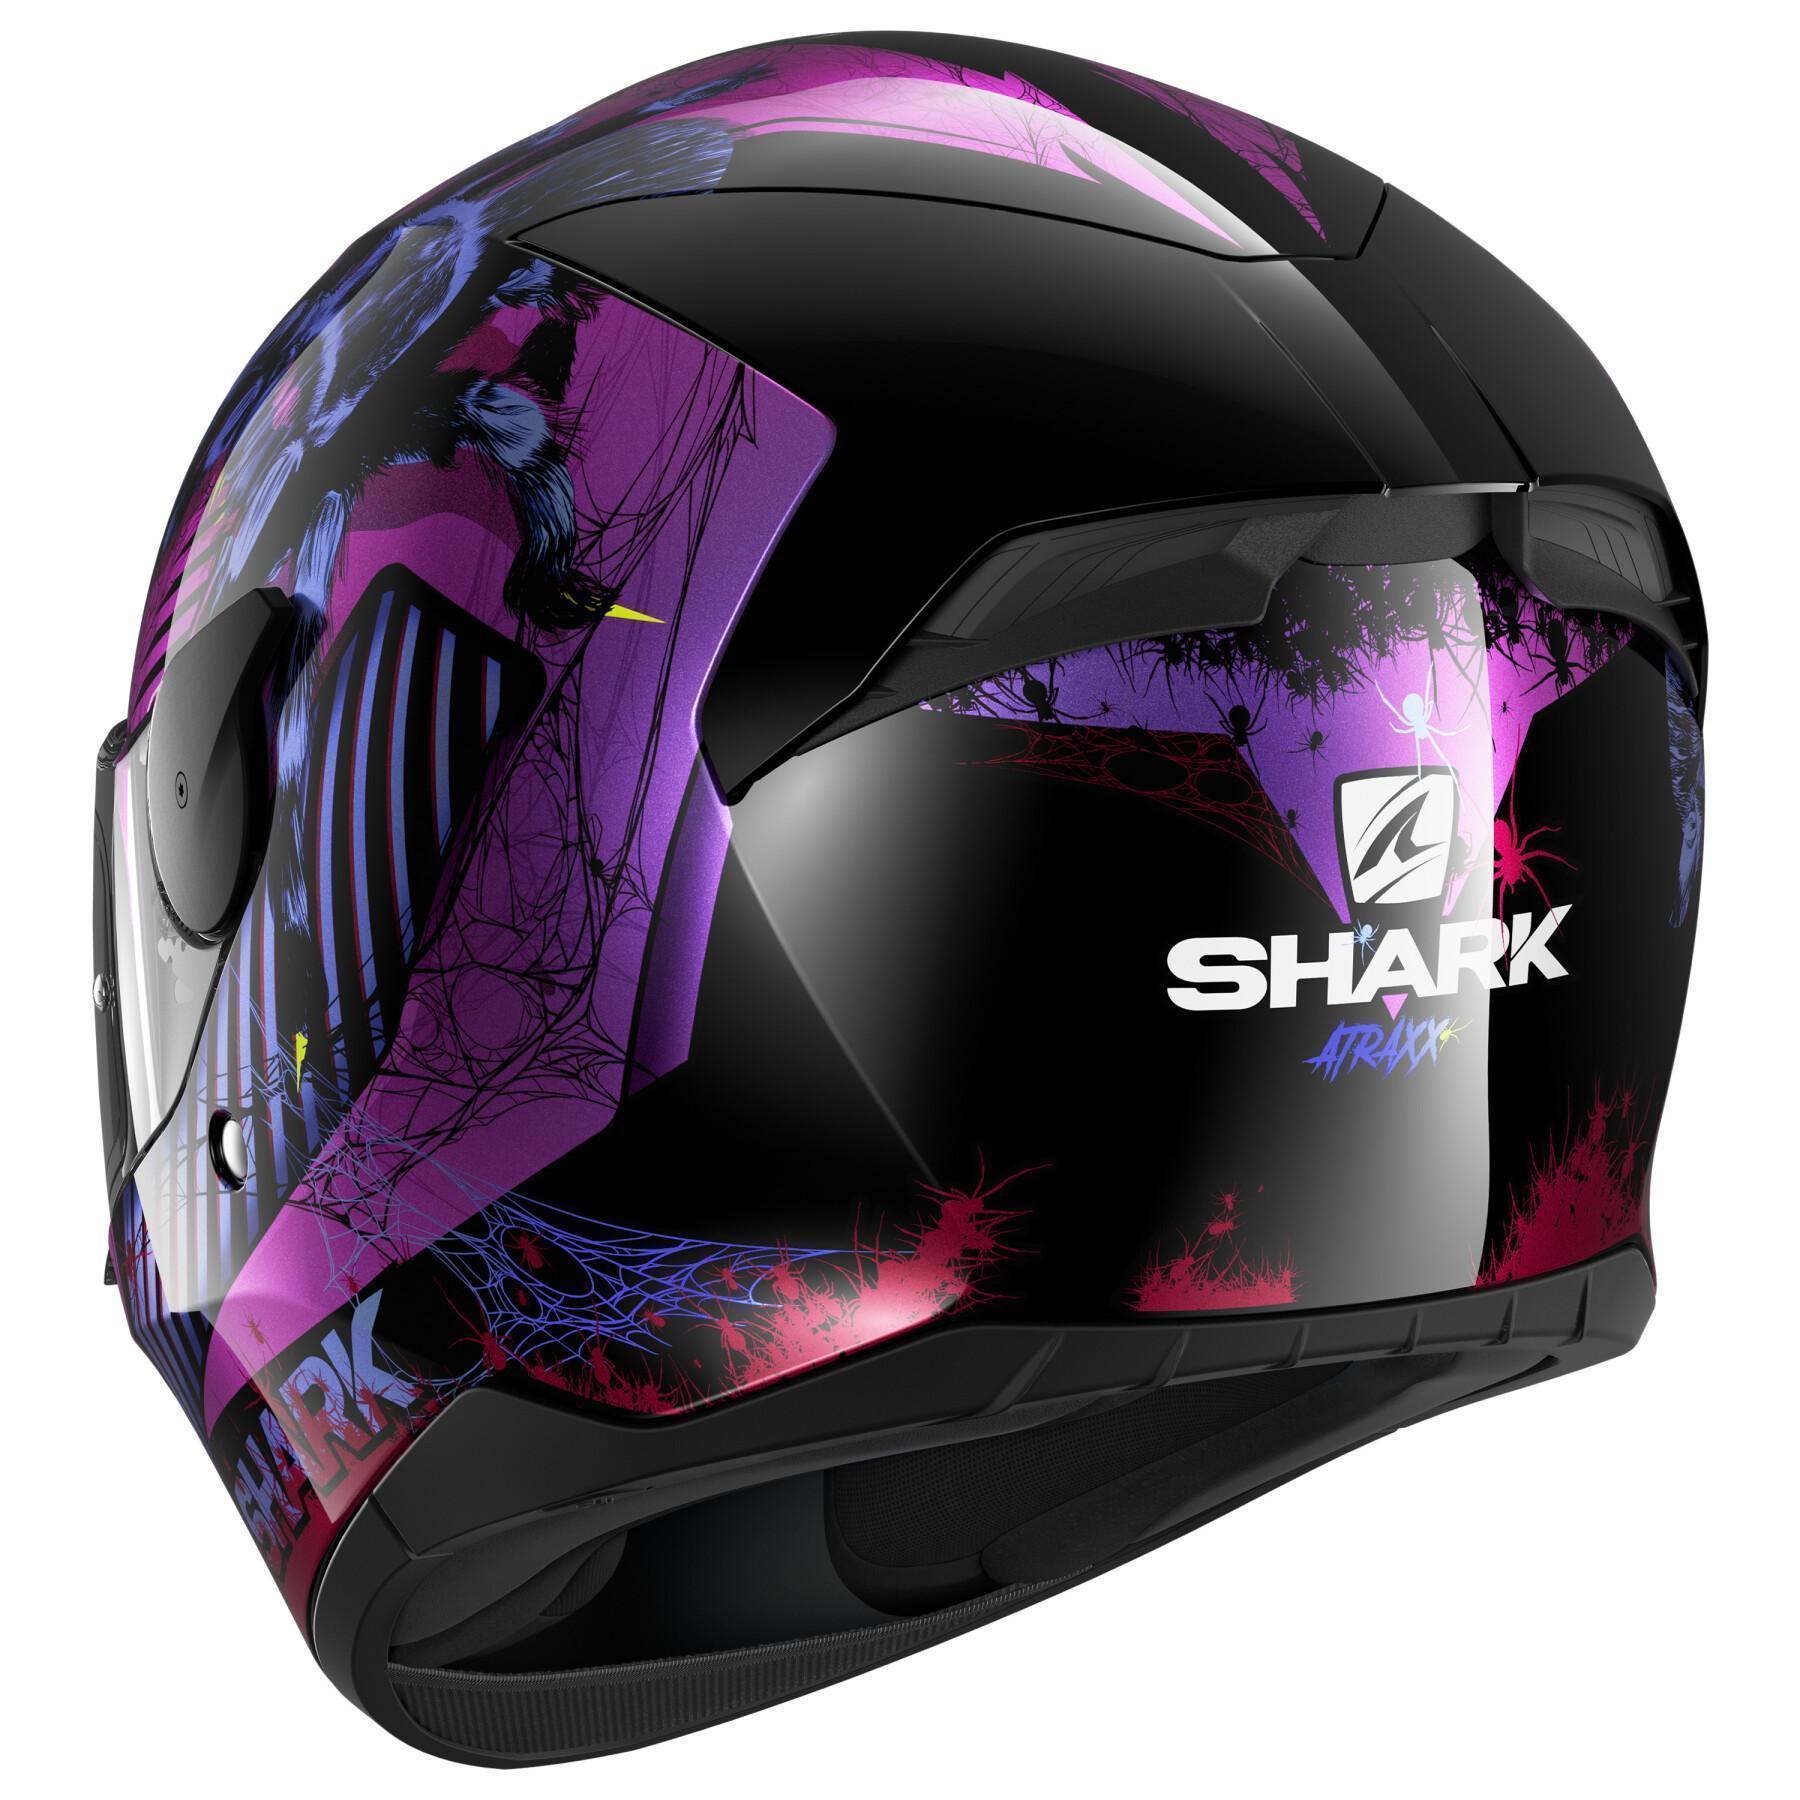 Full face motorcycle helmet Shark d-skwal 2 atraxx